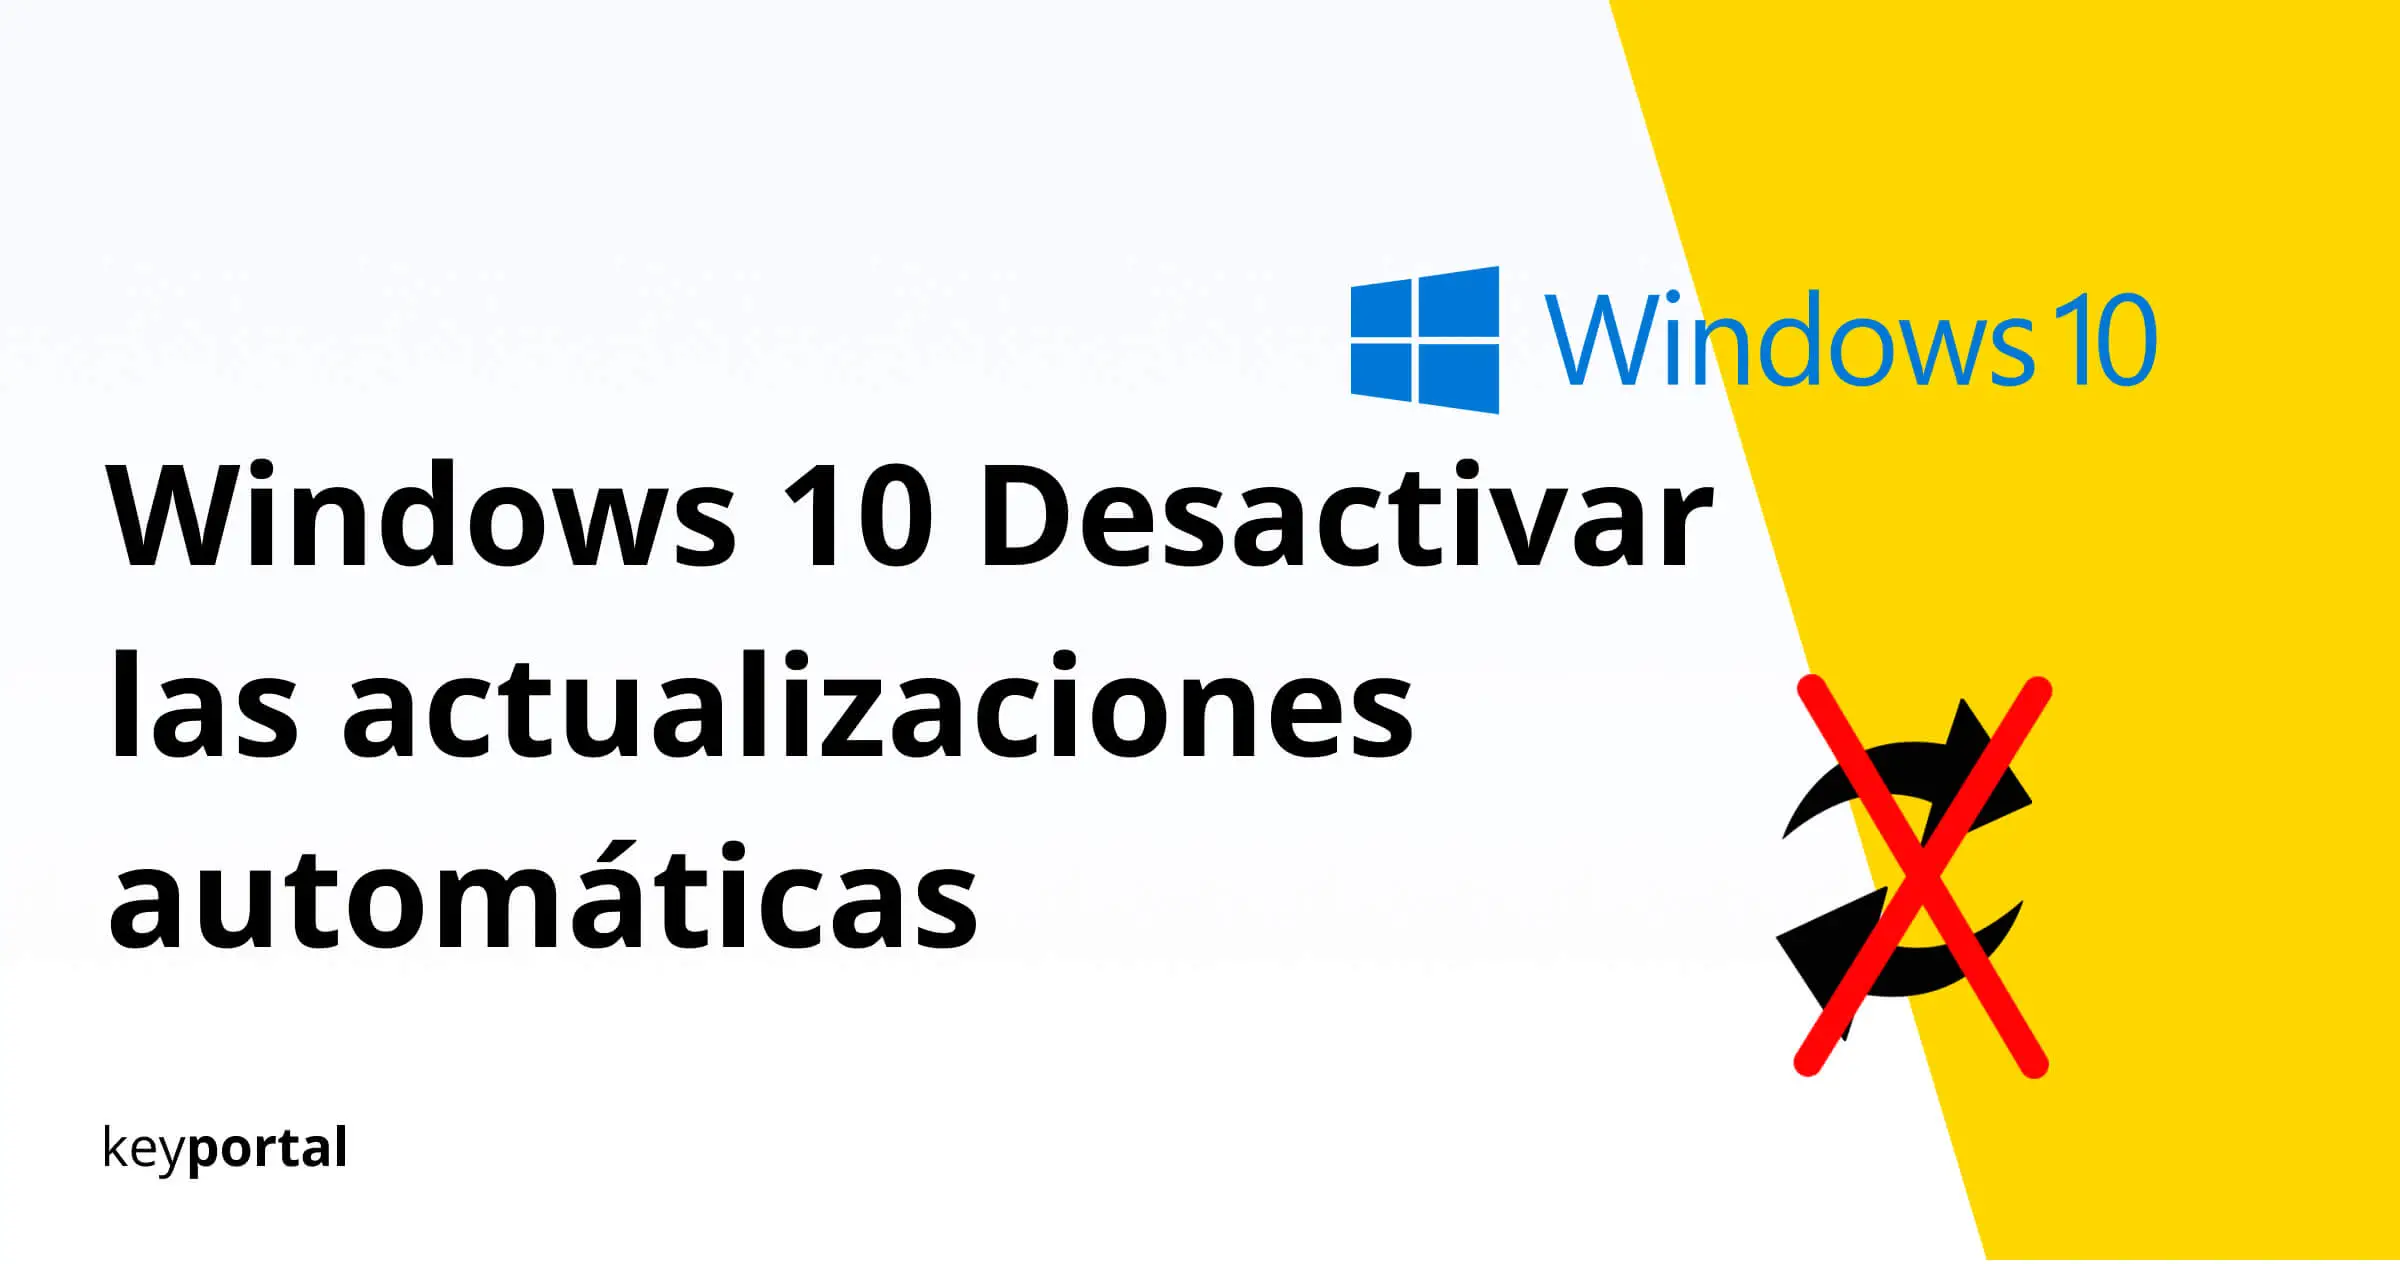 Desactivar las actualizaciones automáticas de Windows 10 